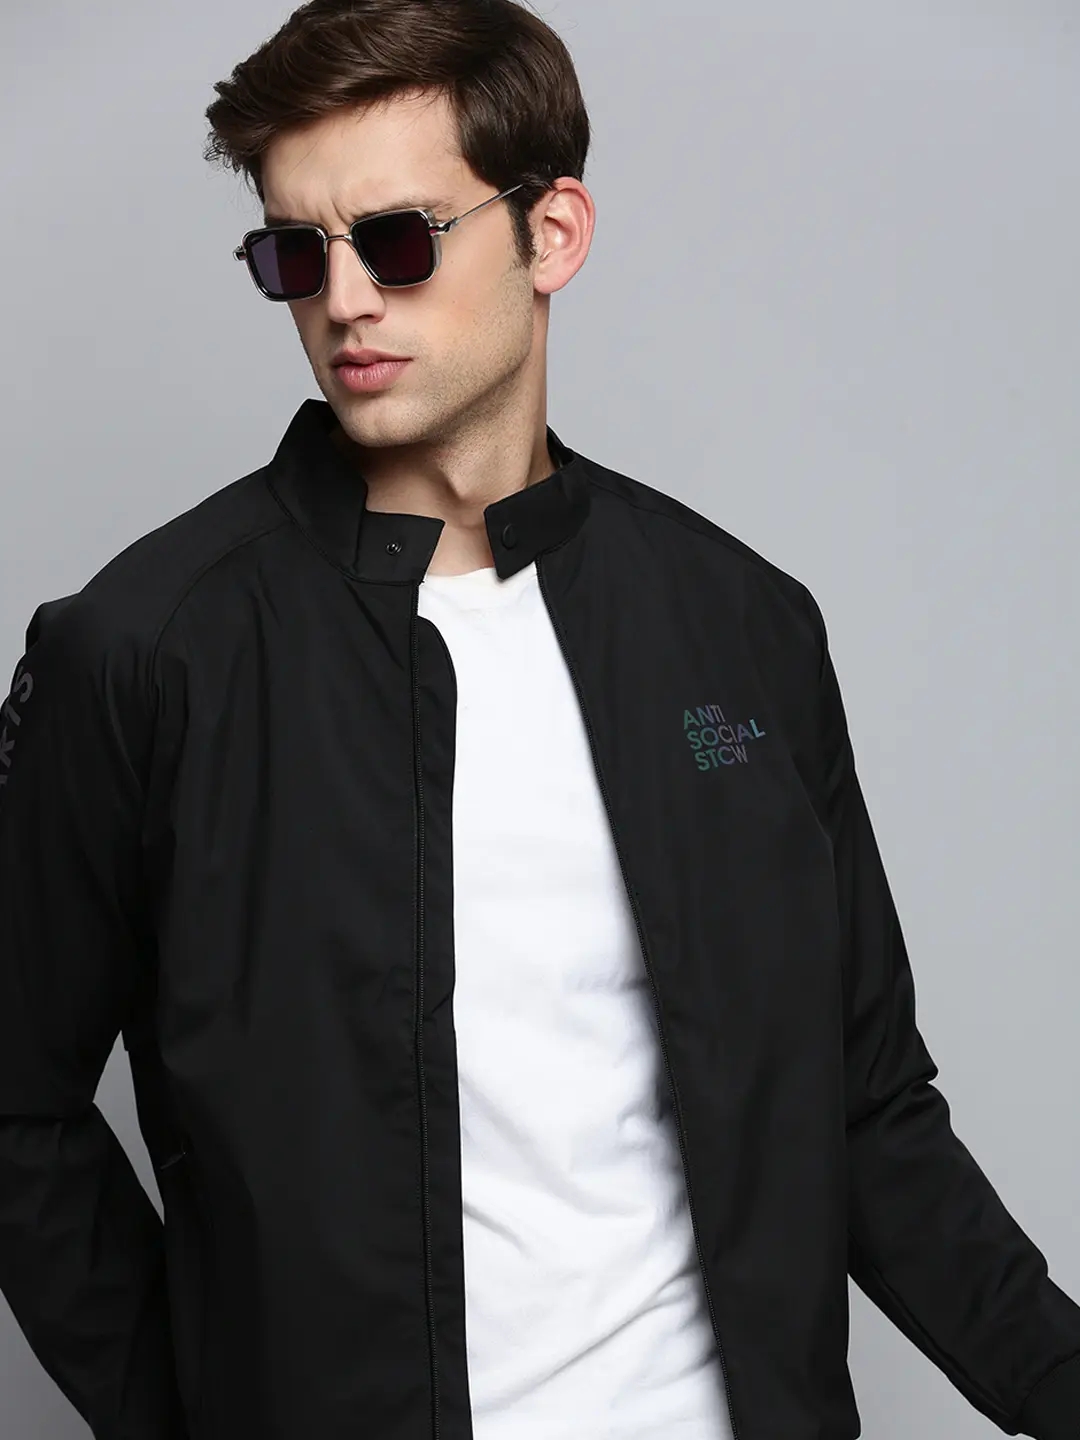 SHOWOFF Men's Mock Collar Solid Black Open Front Jacket